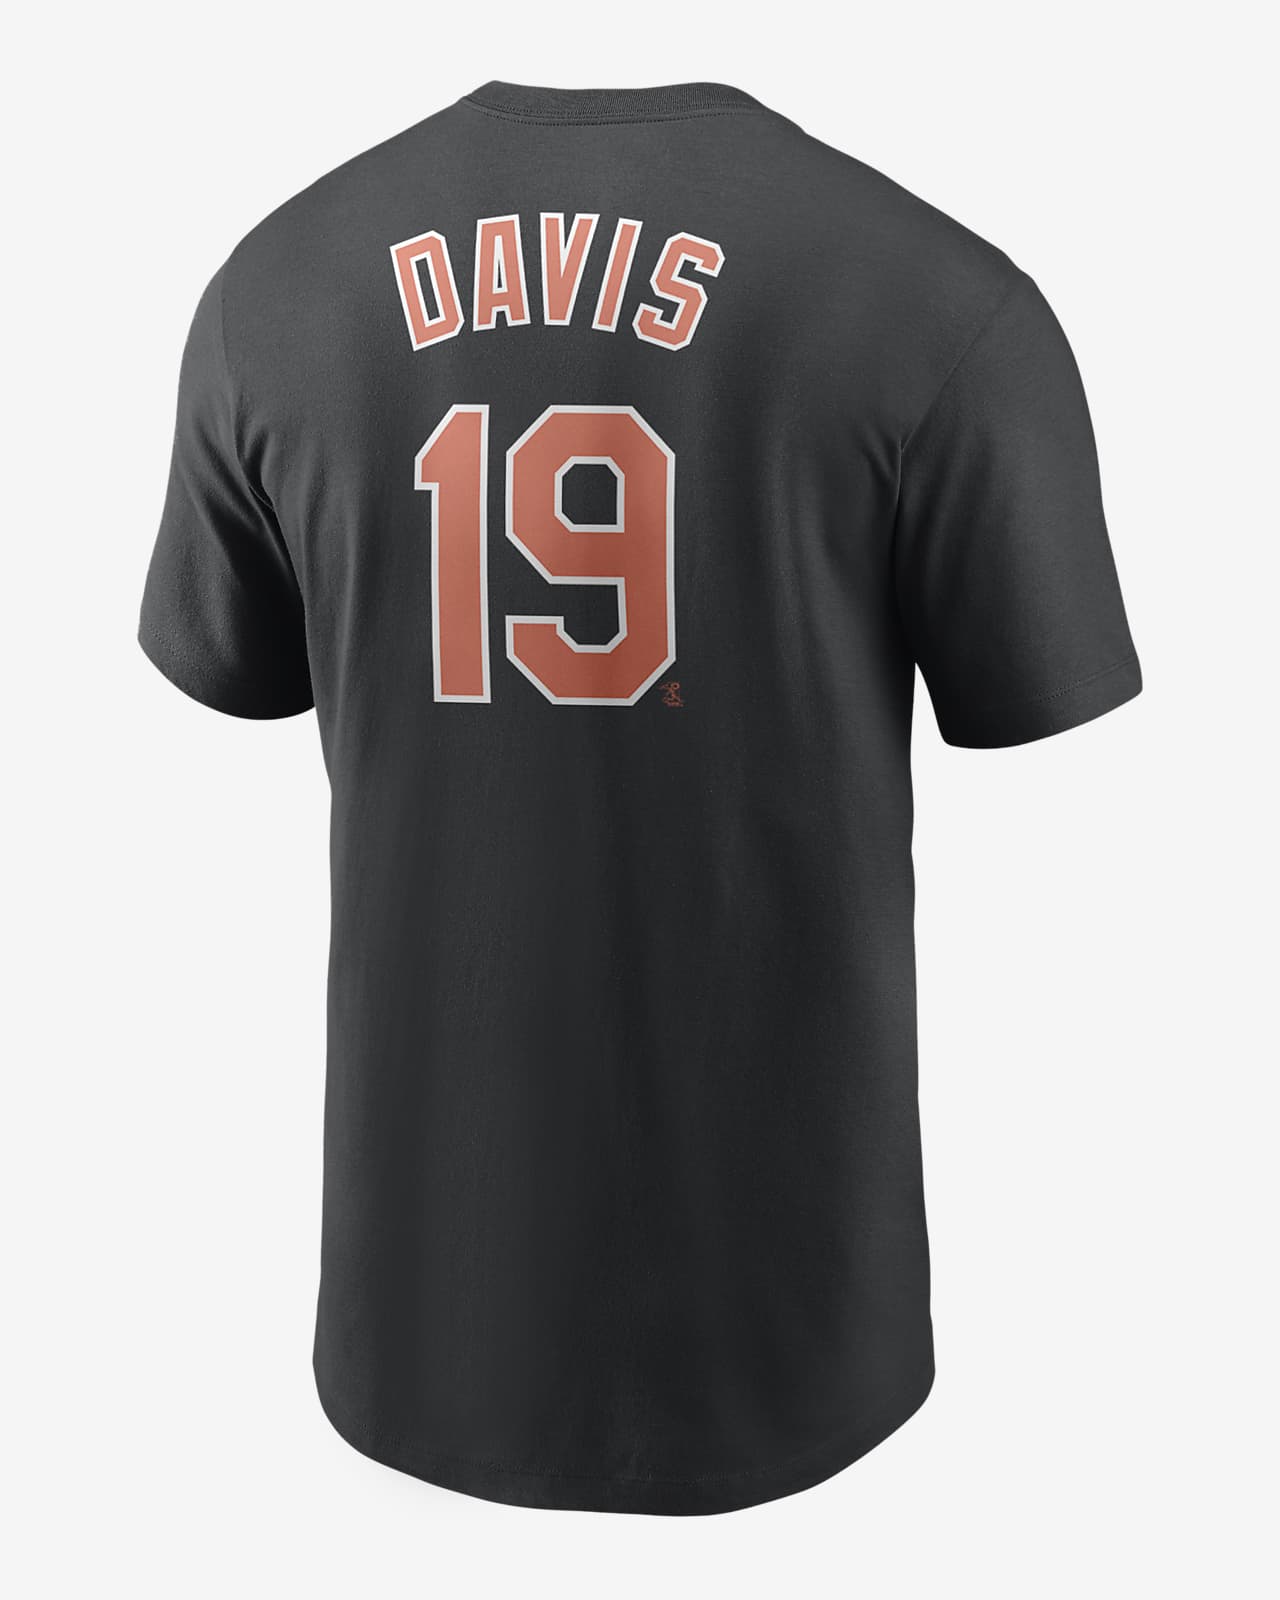 MLB Baltimore Orioles (Chris Davis) Men's T-Shirt.